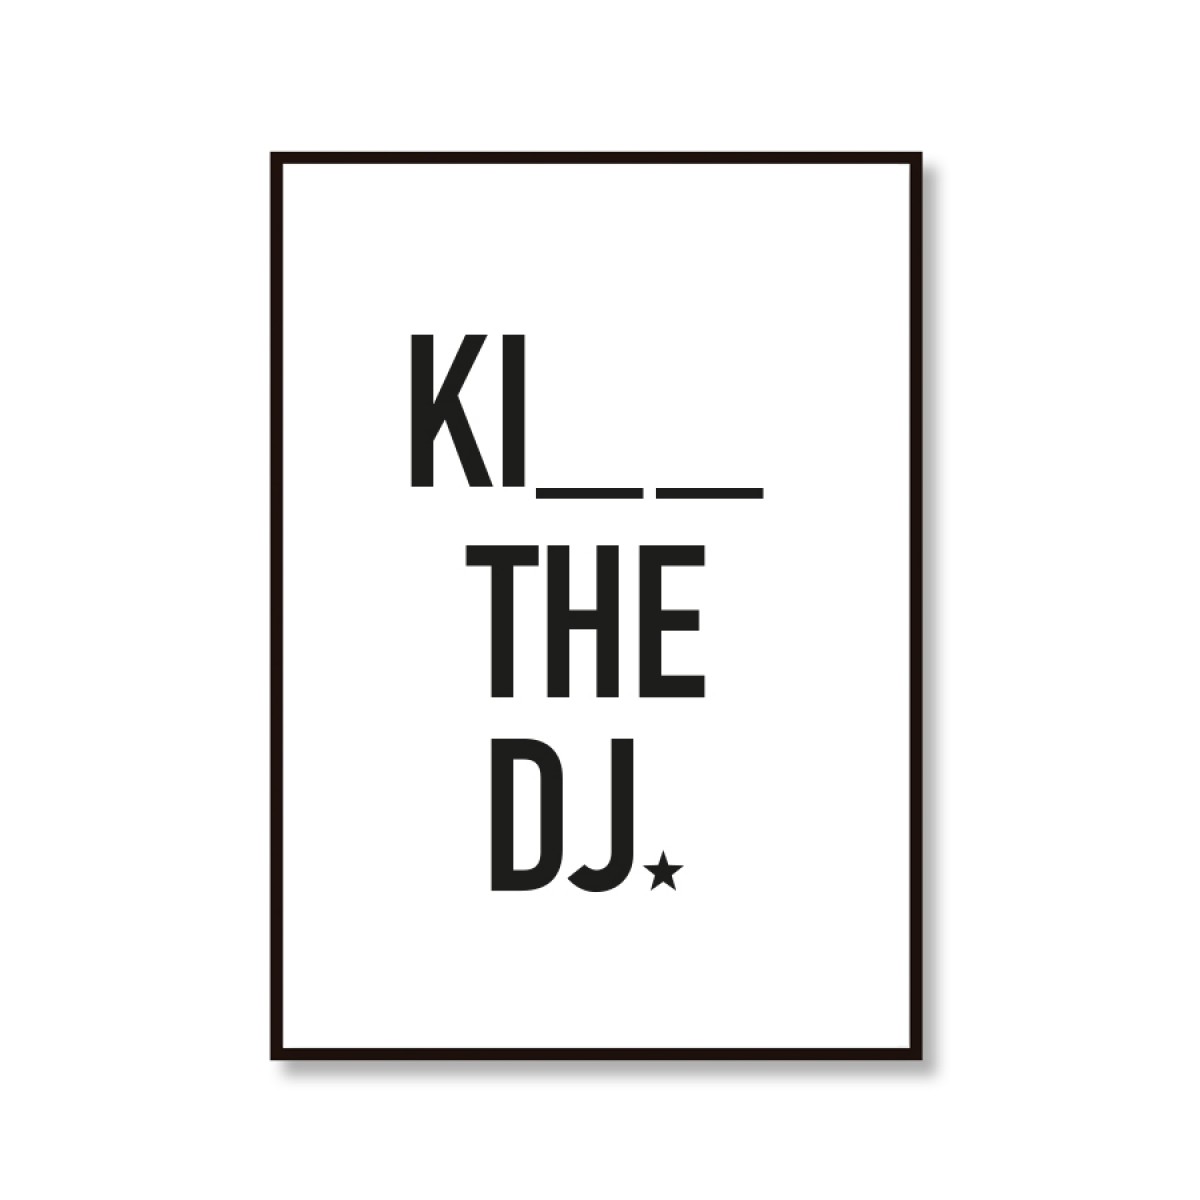 Amy & Kurt Berlin A4 Artprint "Kiss the DJ"